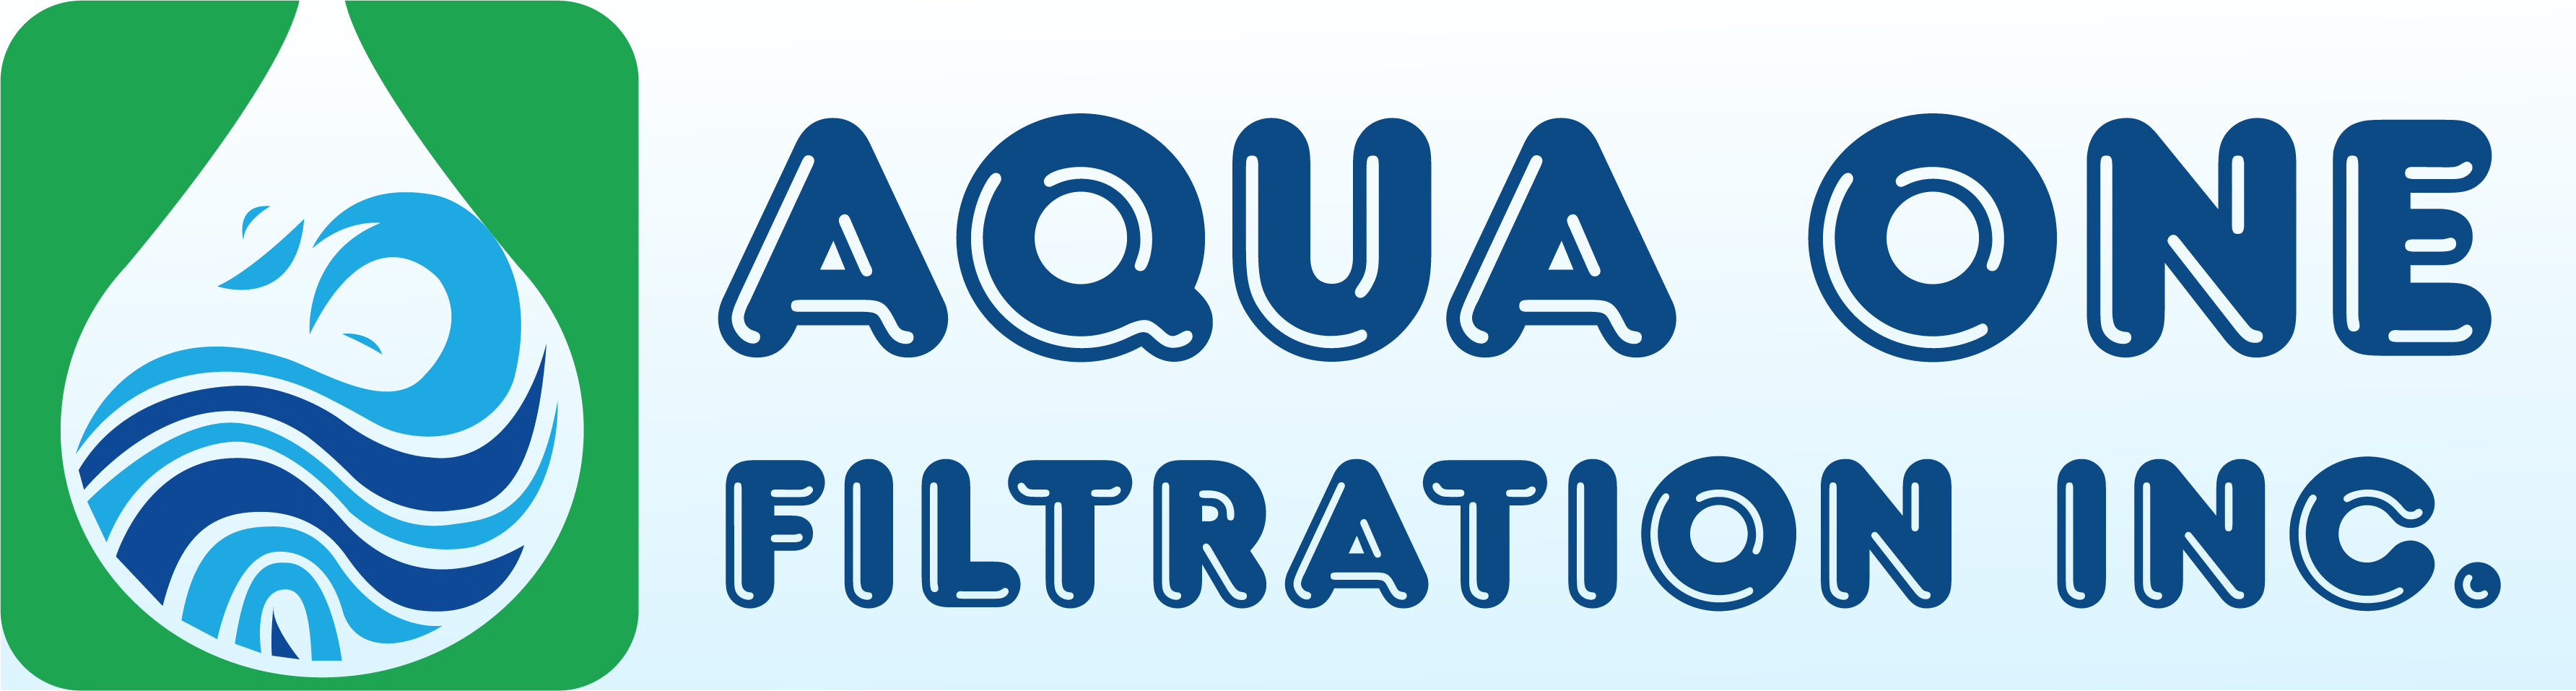 Aqua One Filtration Technologies LTD